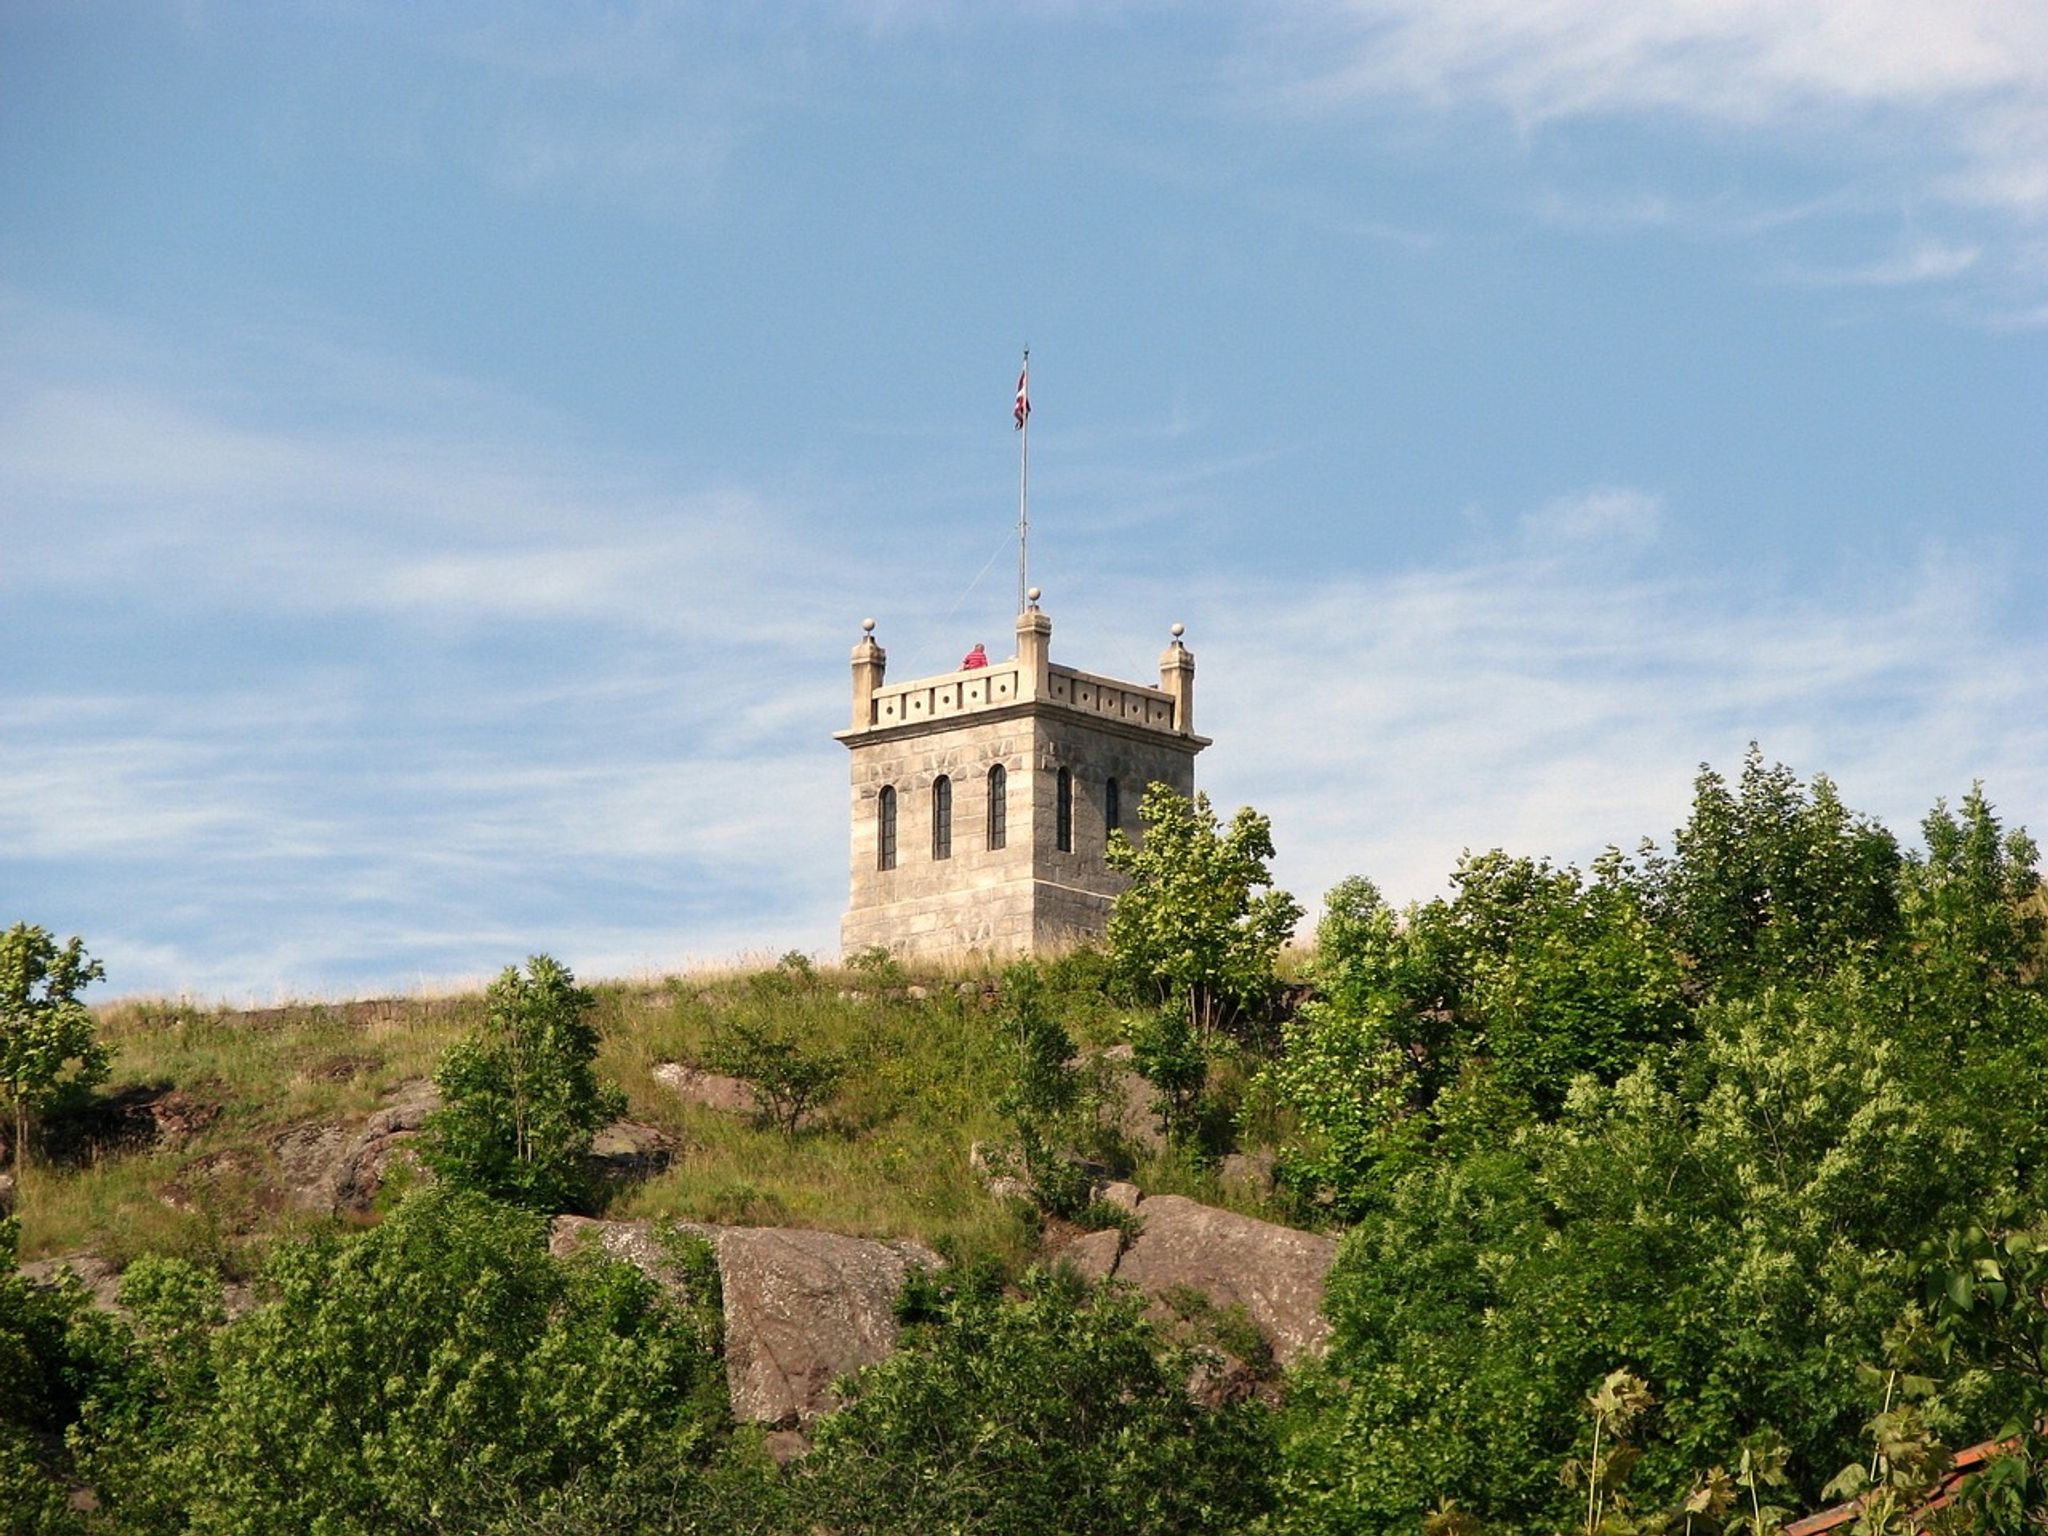 Tønsberg Municipality